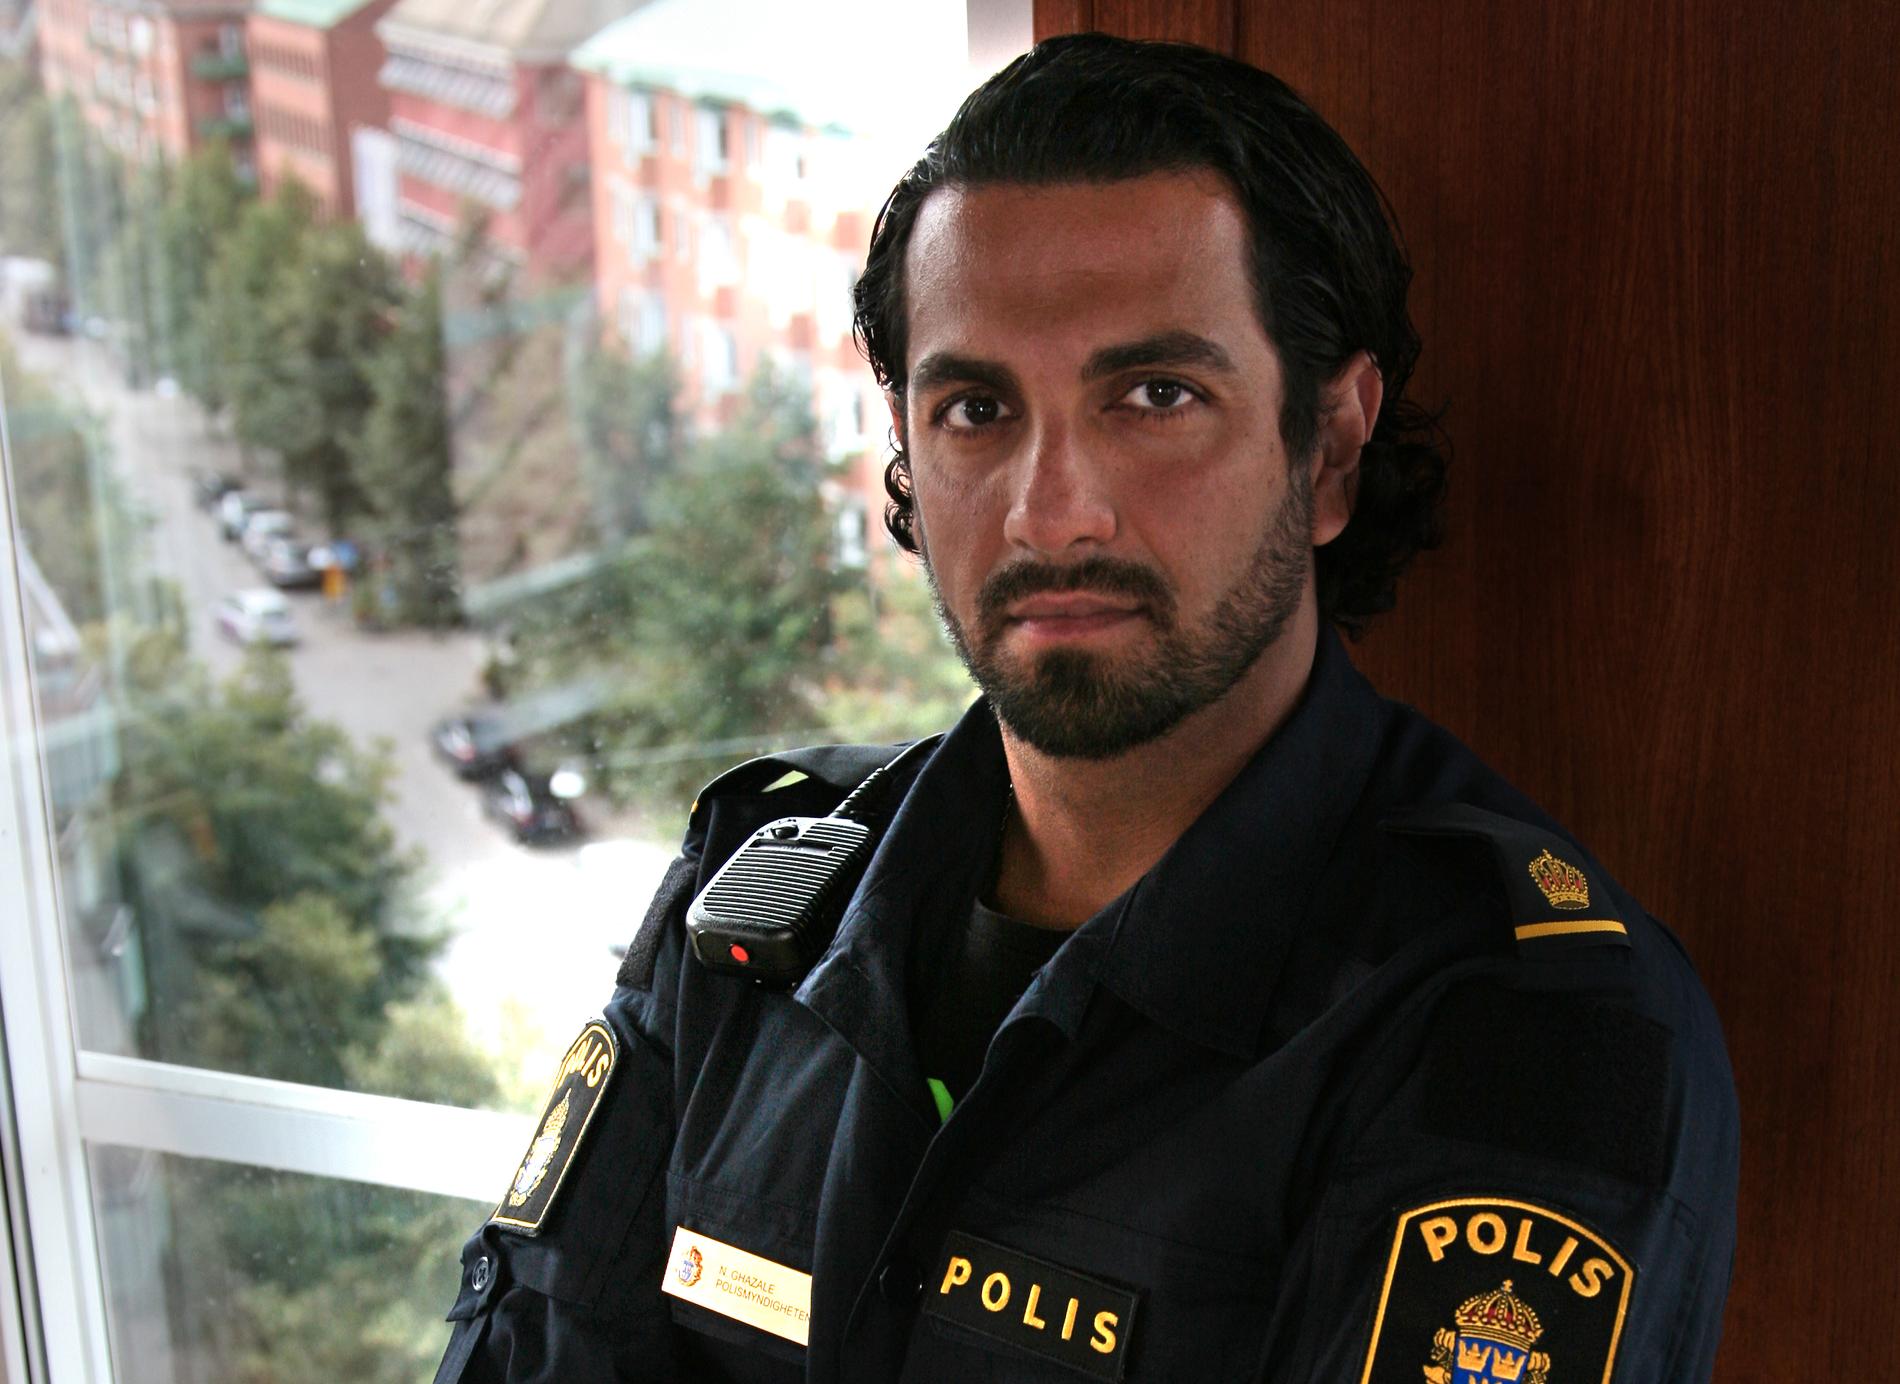 Nadim Ghazale, polis från Borås, är kritisk mot tonen i polisforumet UMF. 